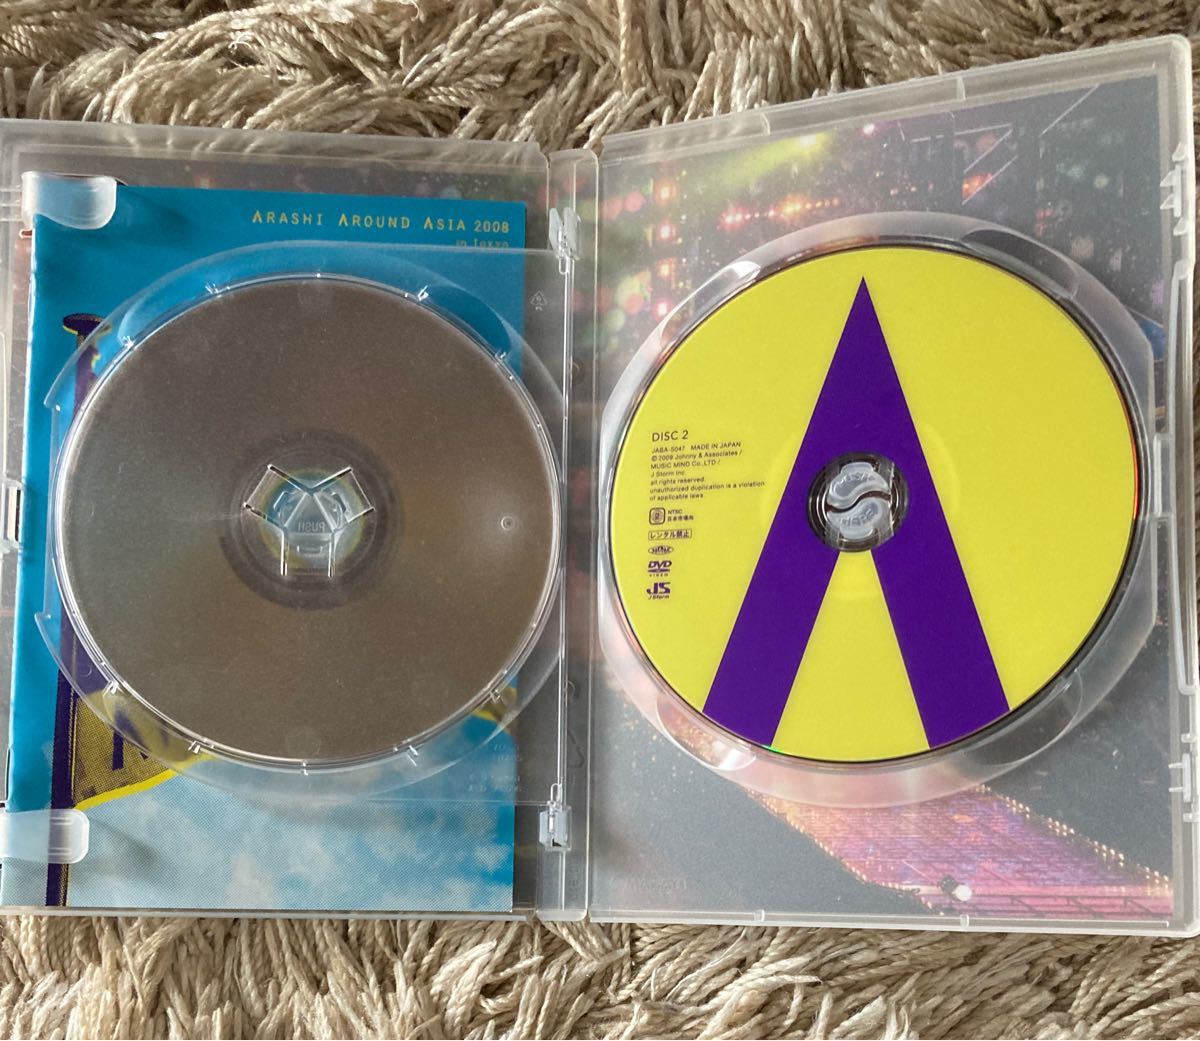 嵐/ARASHI AROUND ASIA 2008 in TOKYO〈2枚組〉 DVD